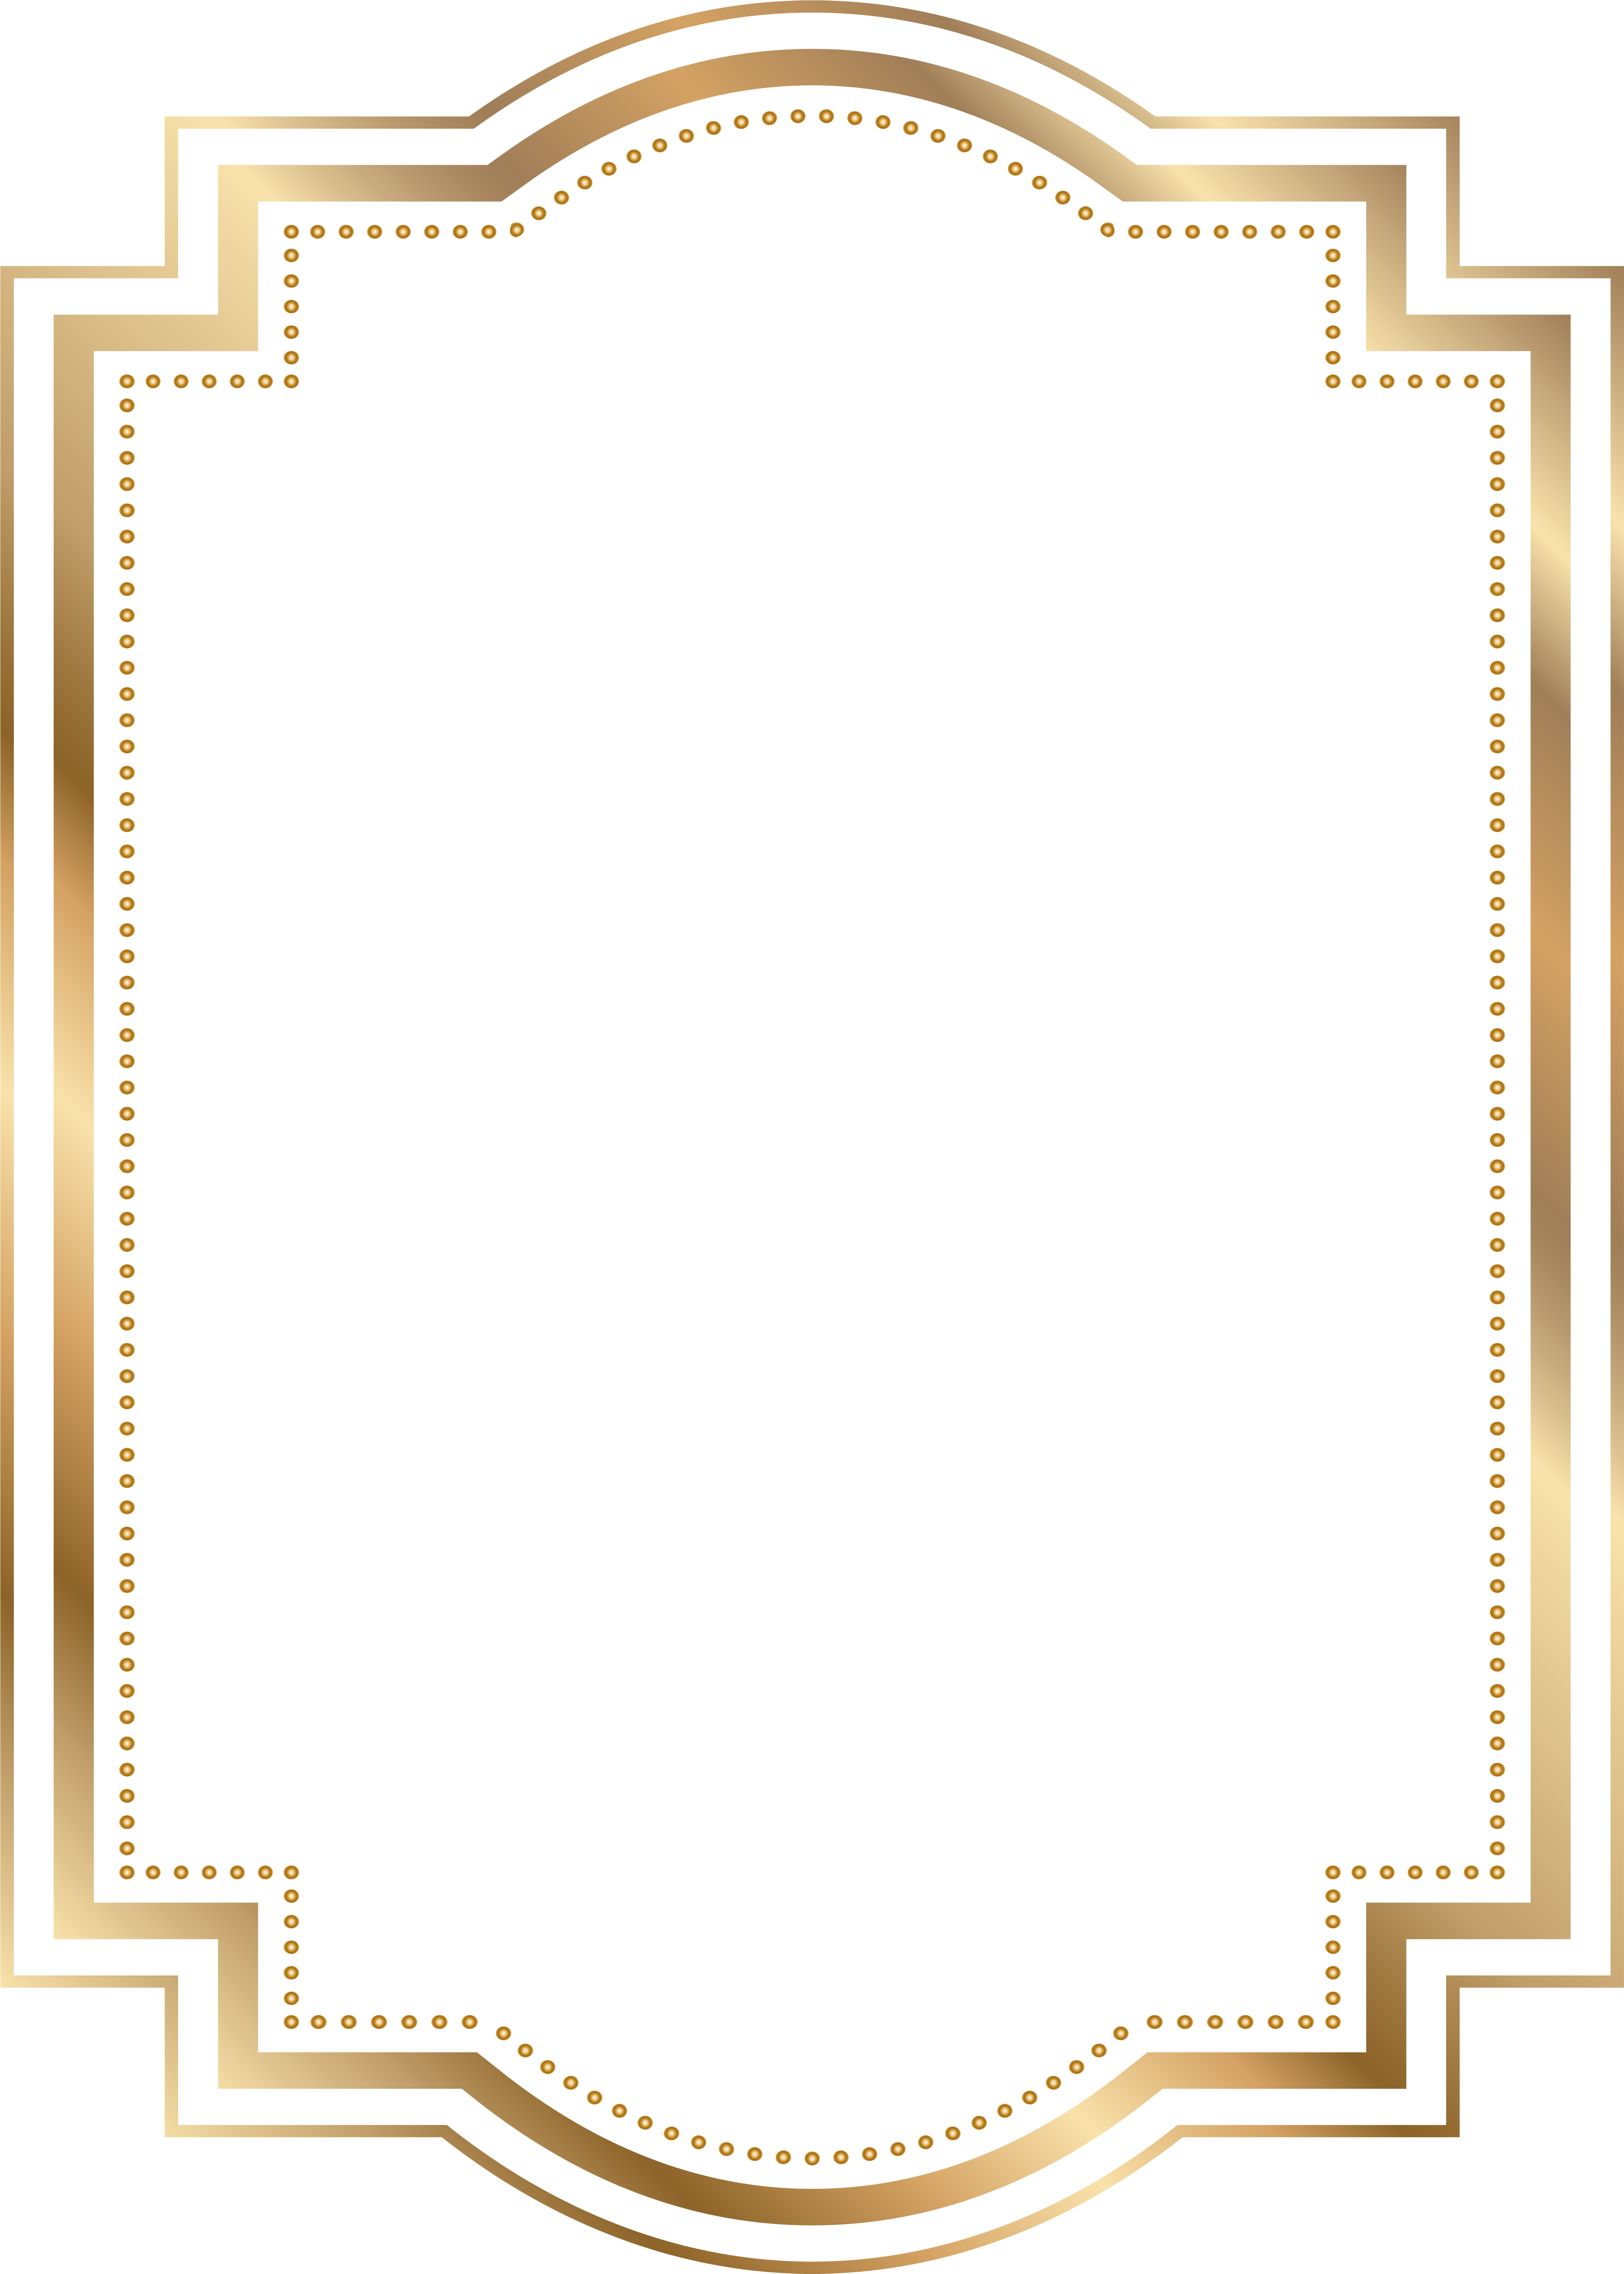 golden frame border